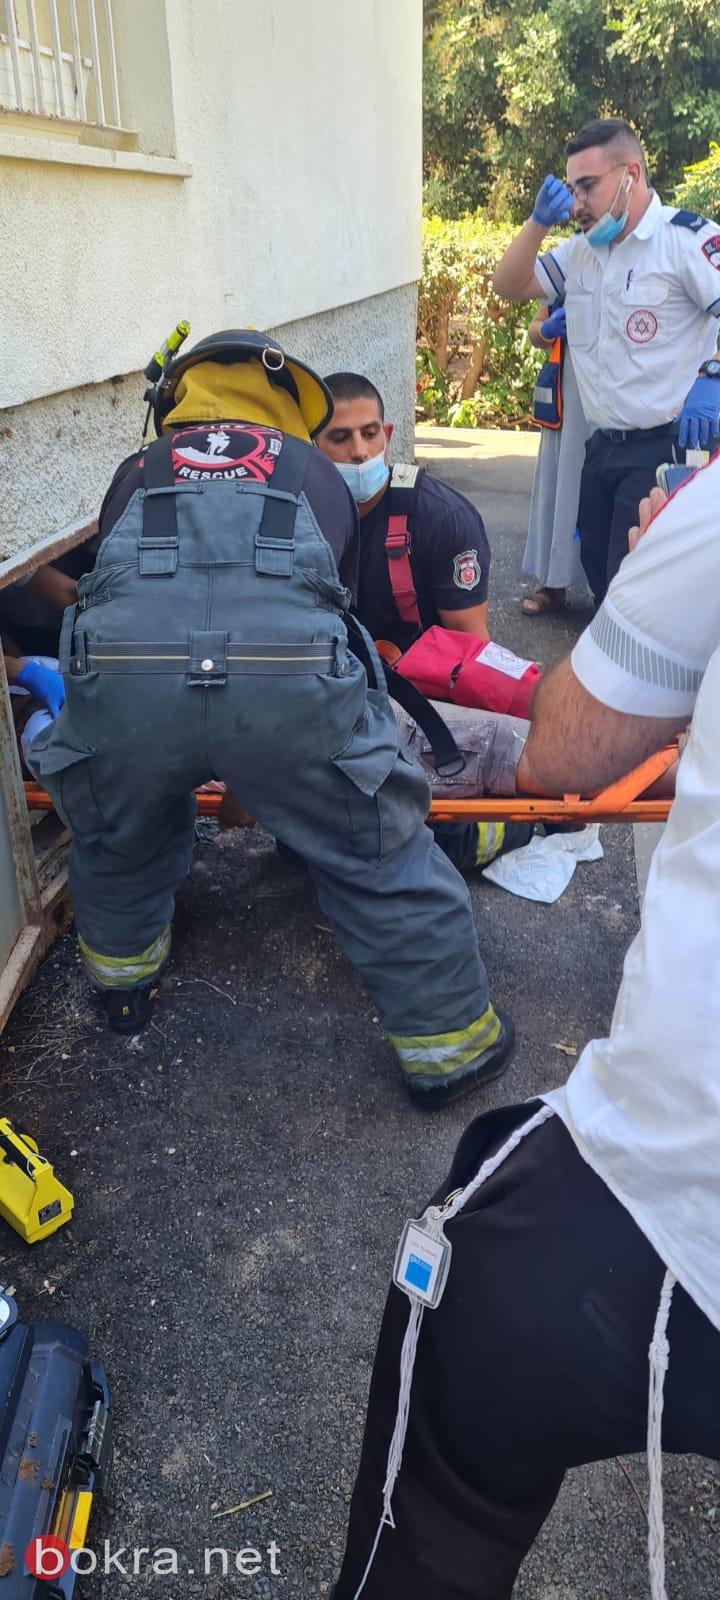 حيفا: تخليص عامل بعد إصابته بحادث عمل-0